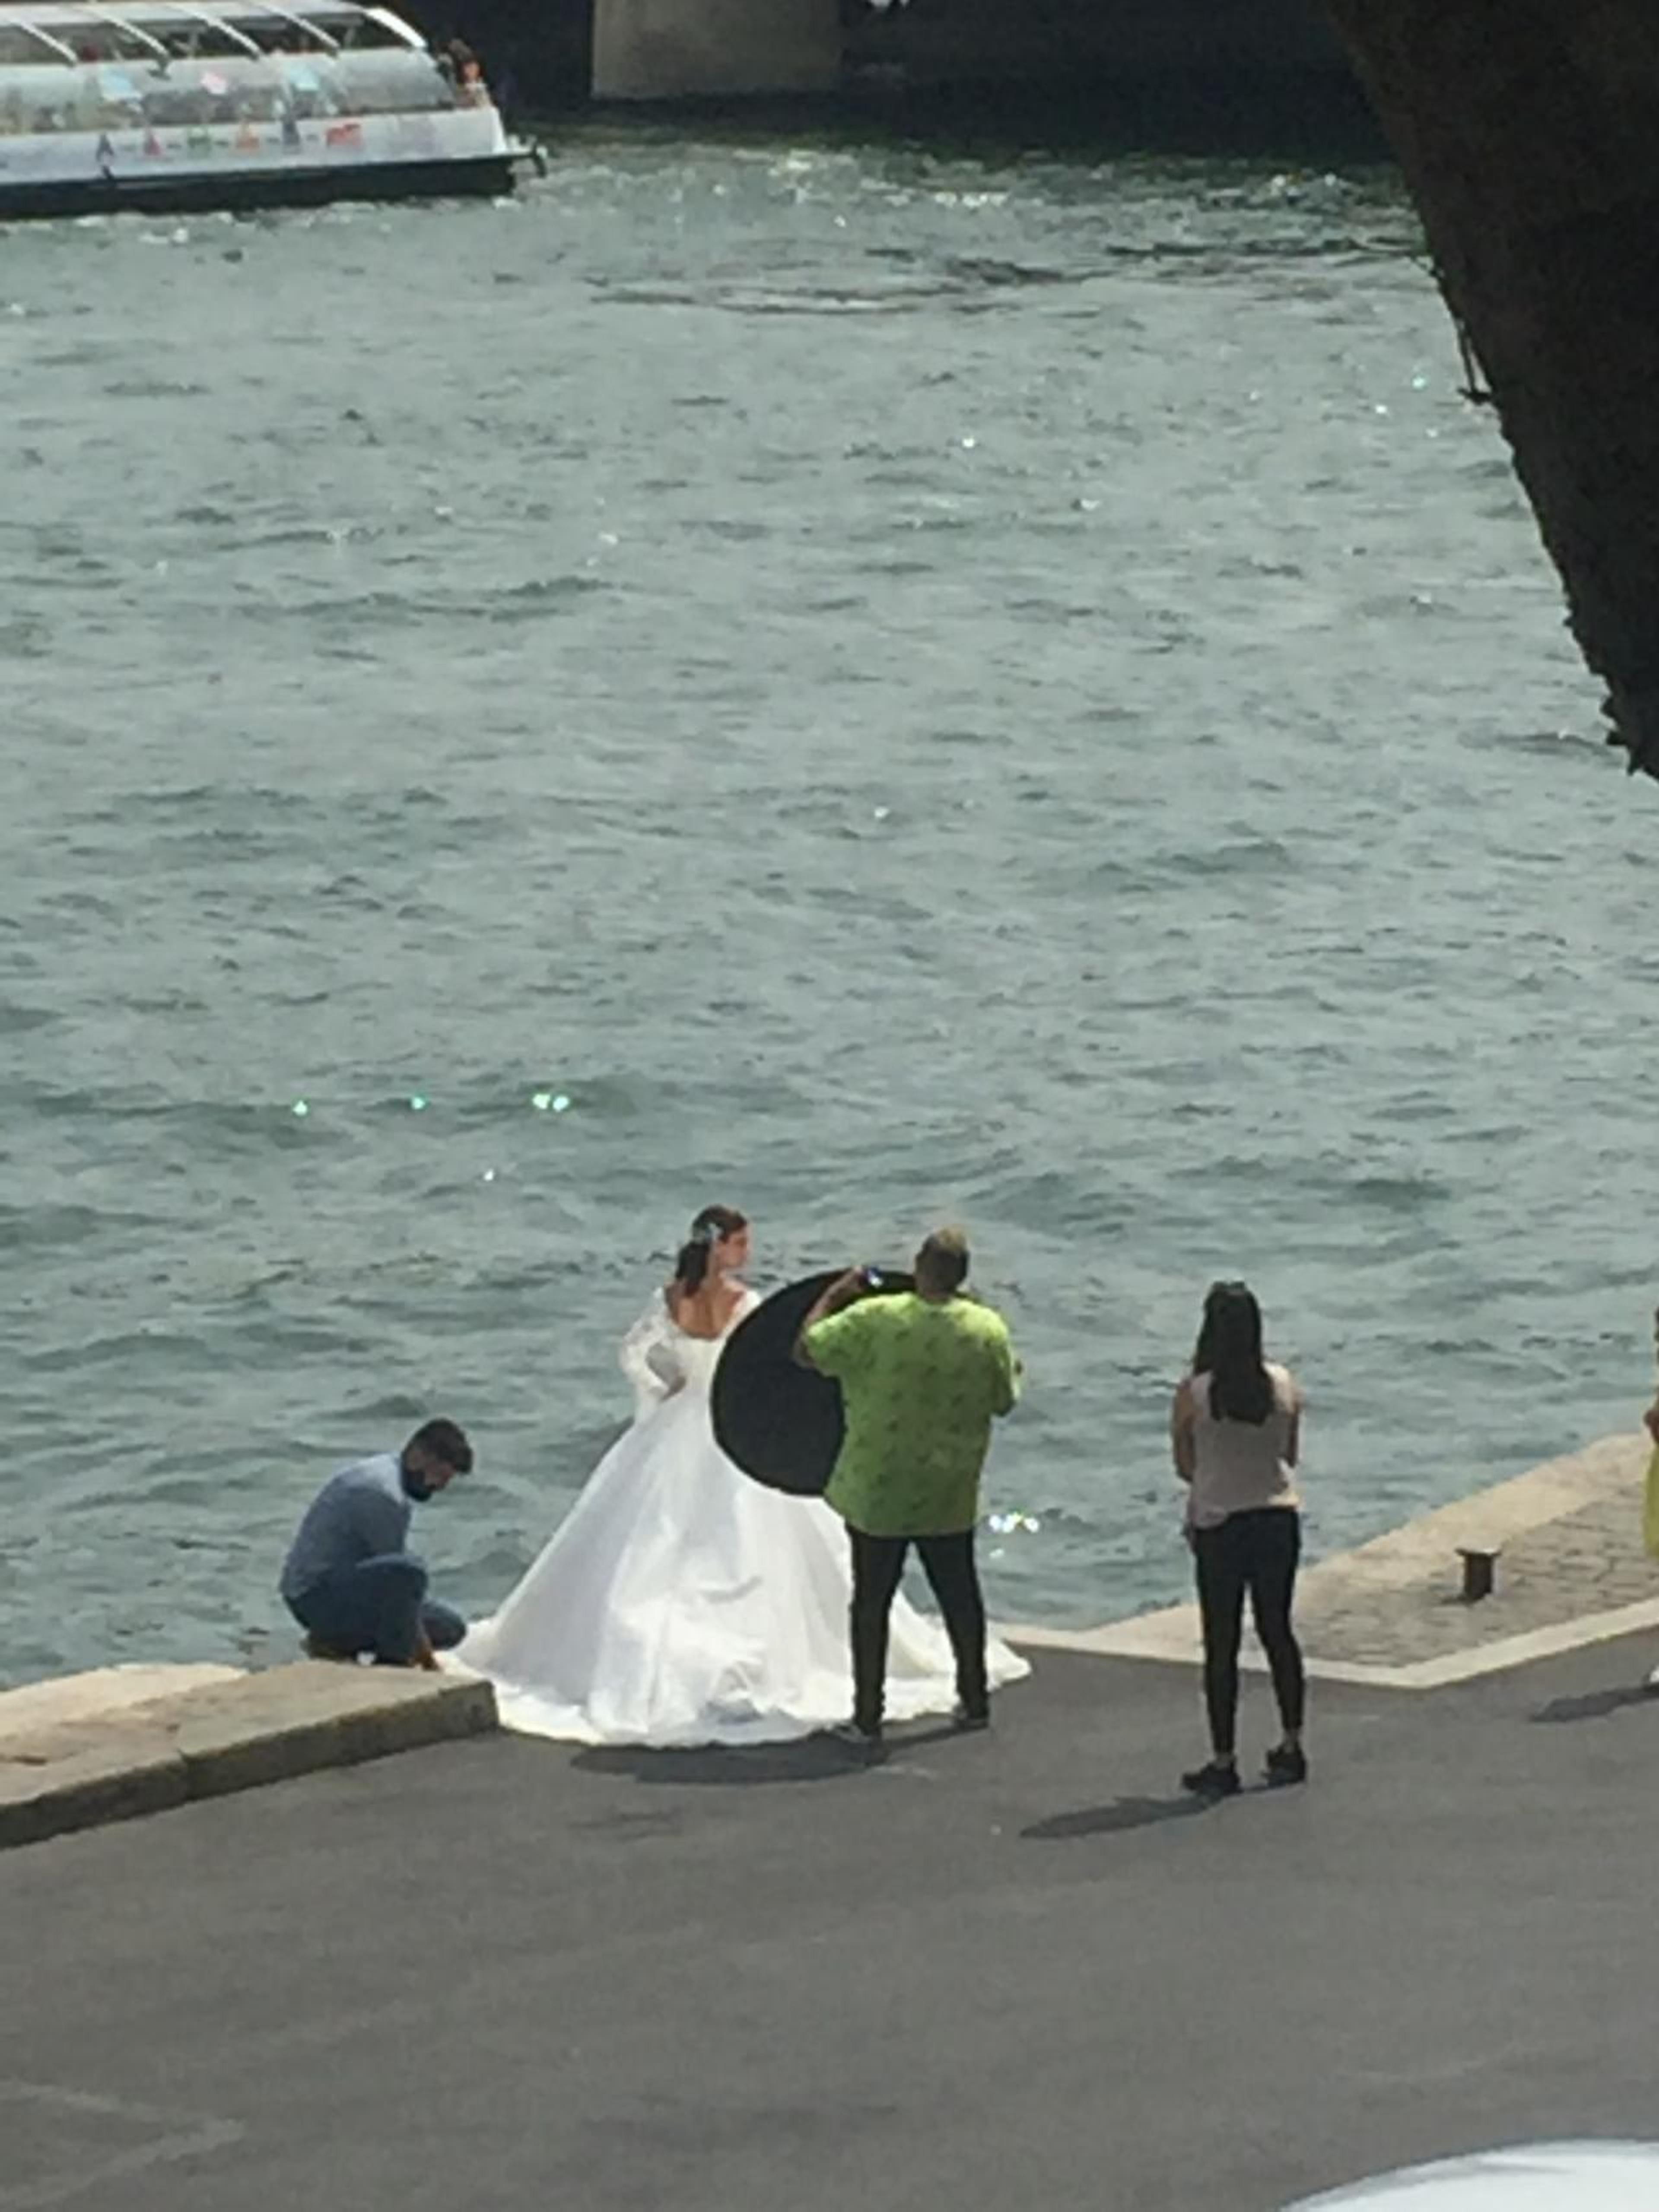 A bride on the Seine